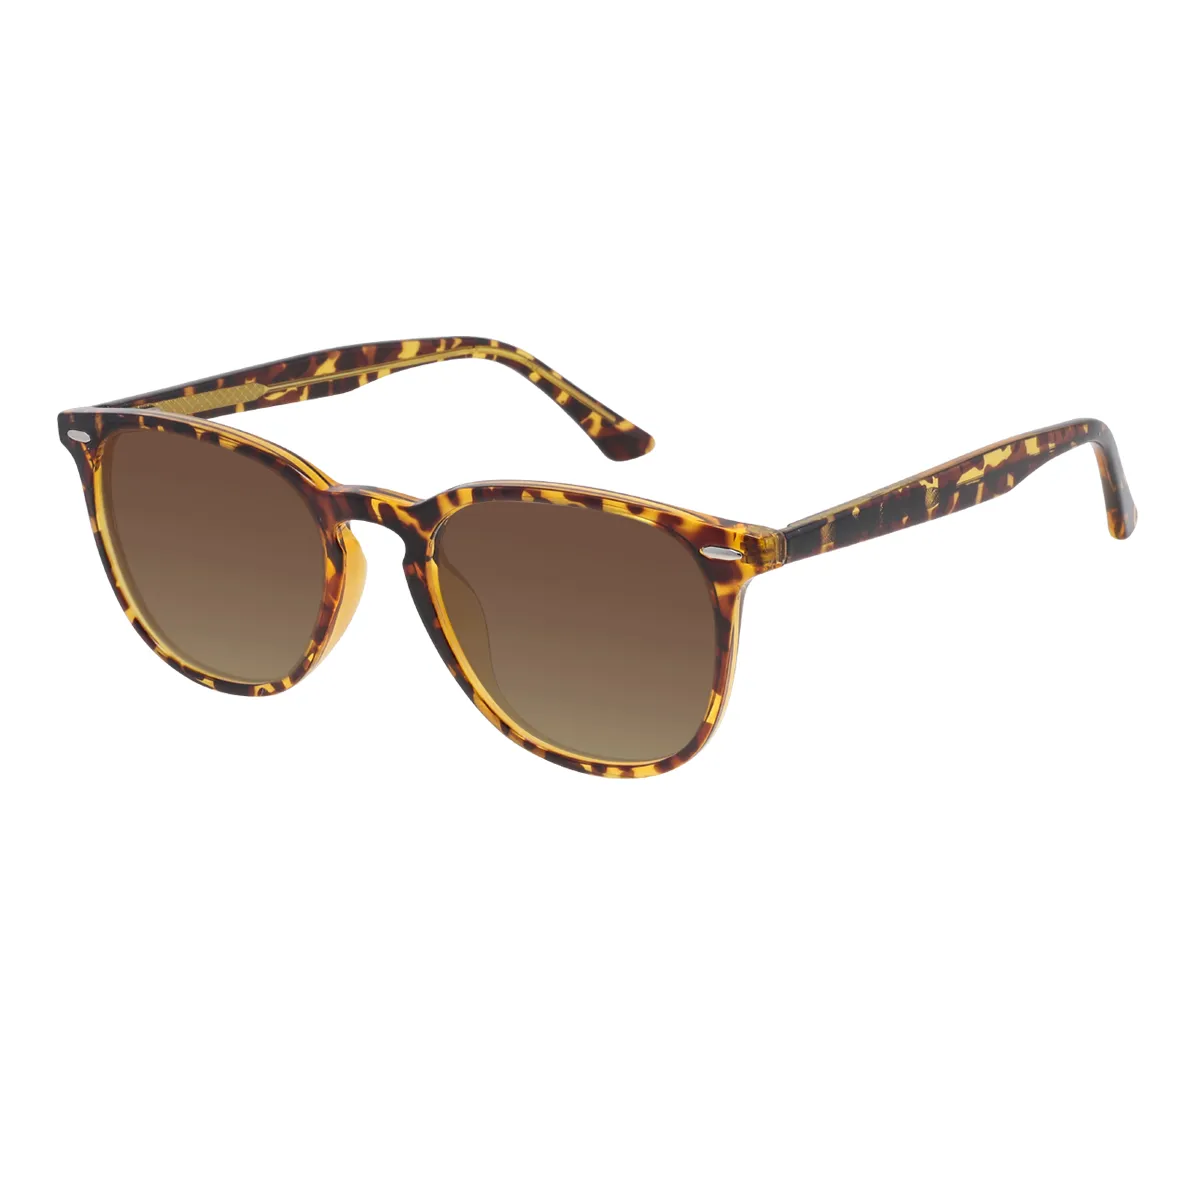 Dobbins - Square Tortoiseshell Sunglasses for Men & Women